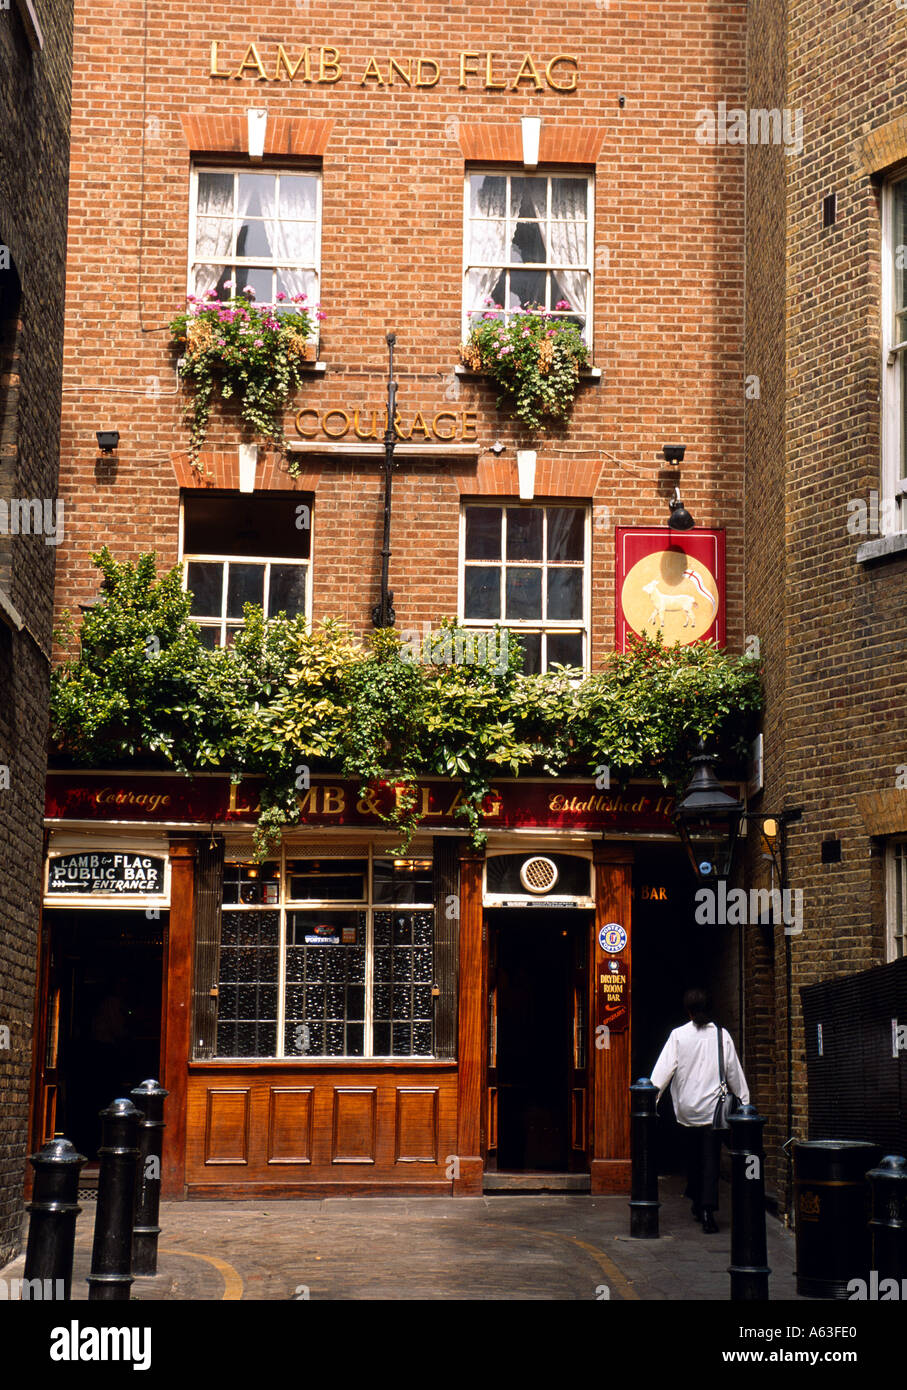 Das Lamm Flagge Pub im Zentrum von London England Stockfoto